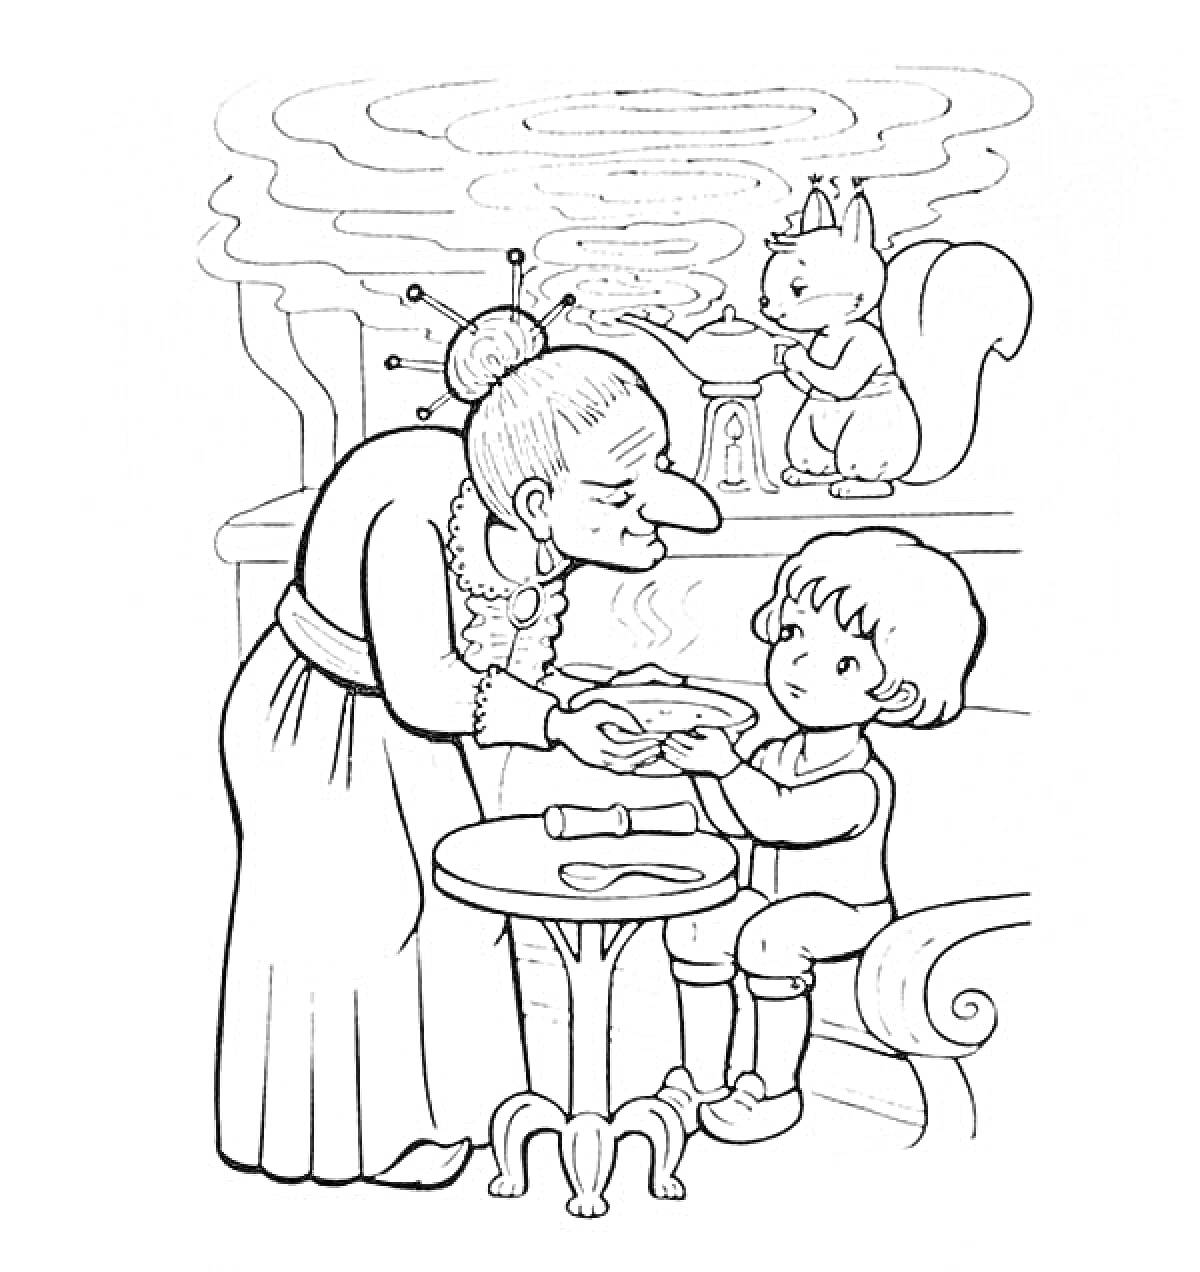 Раскраска Женщина с тарелкой в руках наклоняется к сидящему мальчику, кот за столом, дым из камина